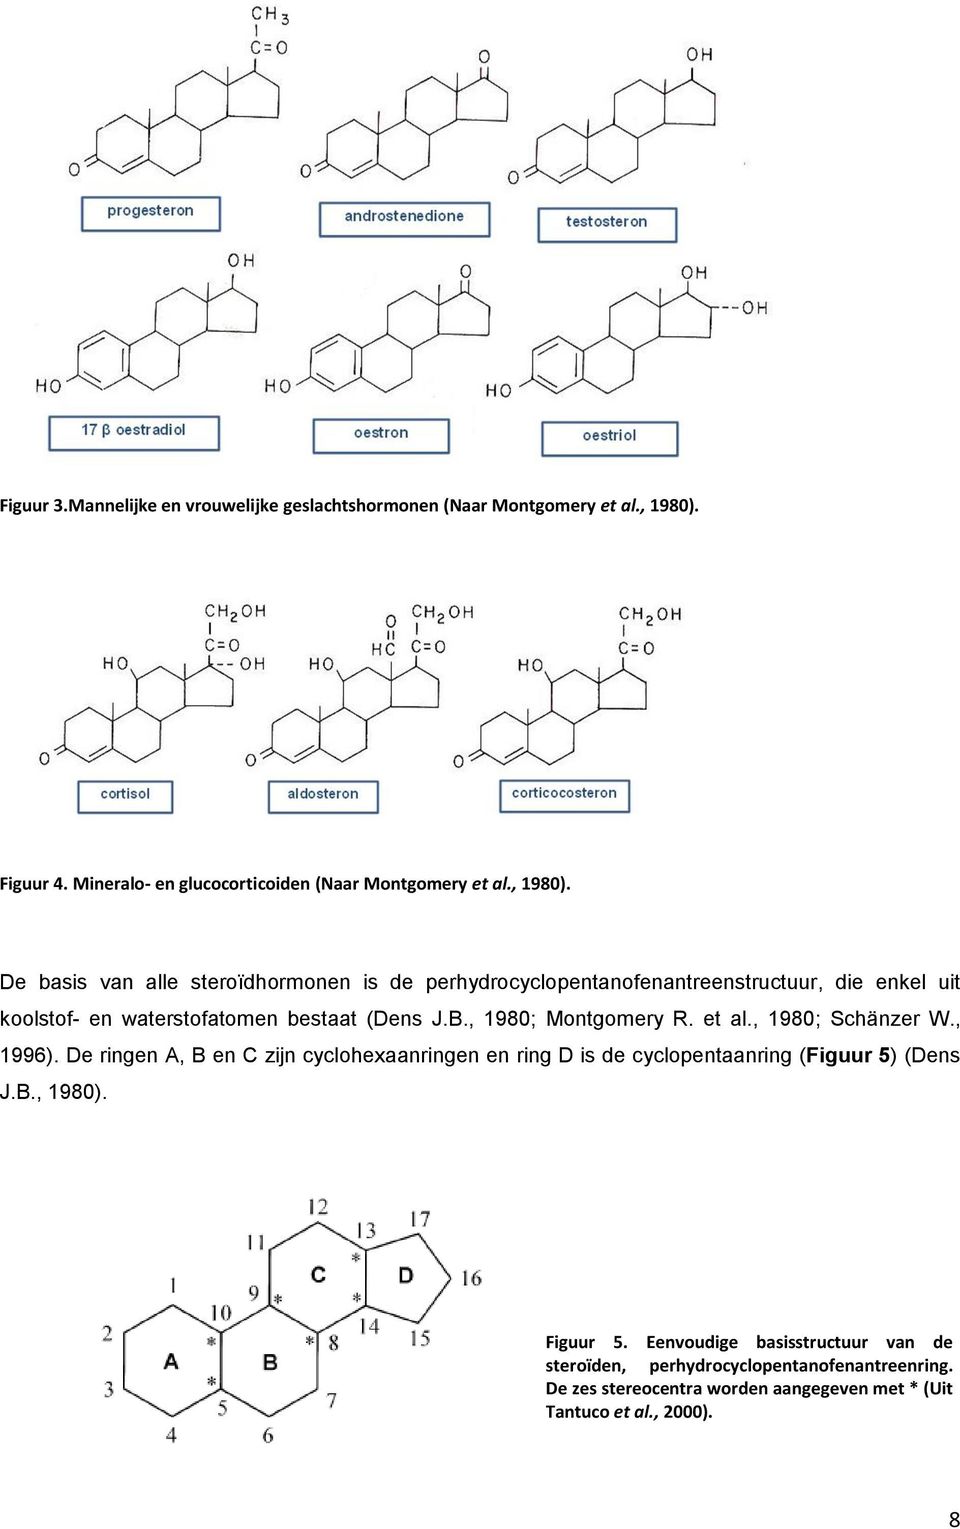 De basis van alle steroïdhormonen is de perhydrocyclopentanofenantreenstructuur, die enkel uit koolstof- en waterstofatomen bestaat (Dens J.B.